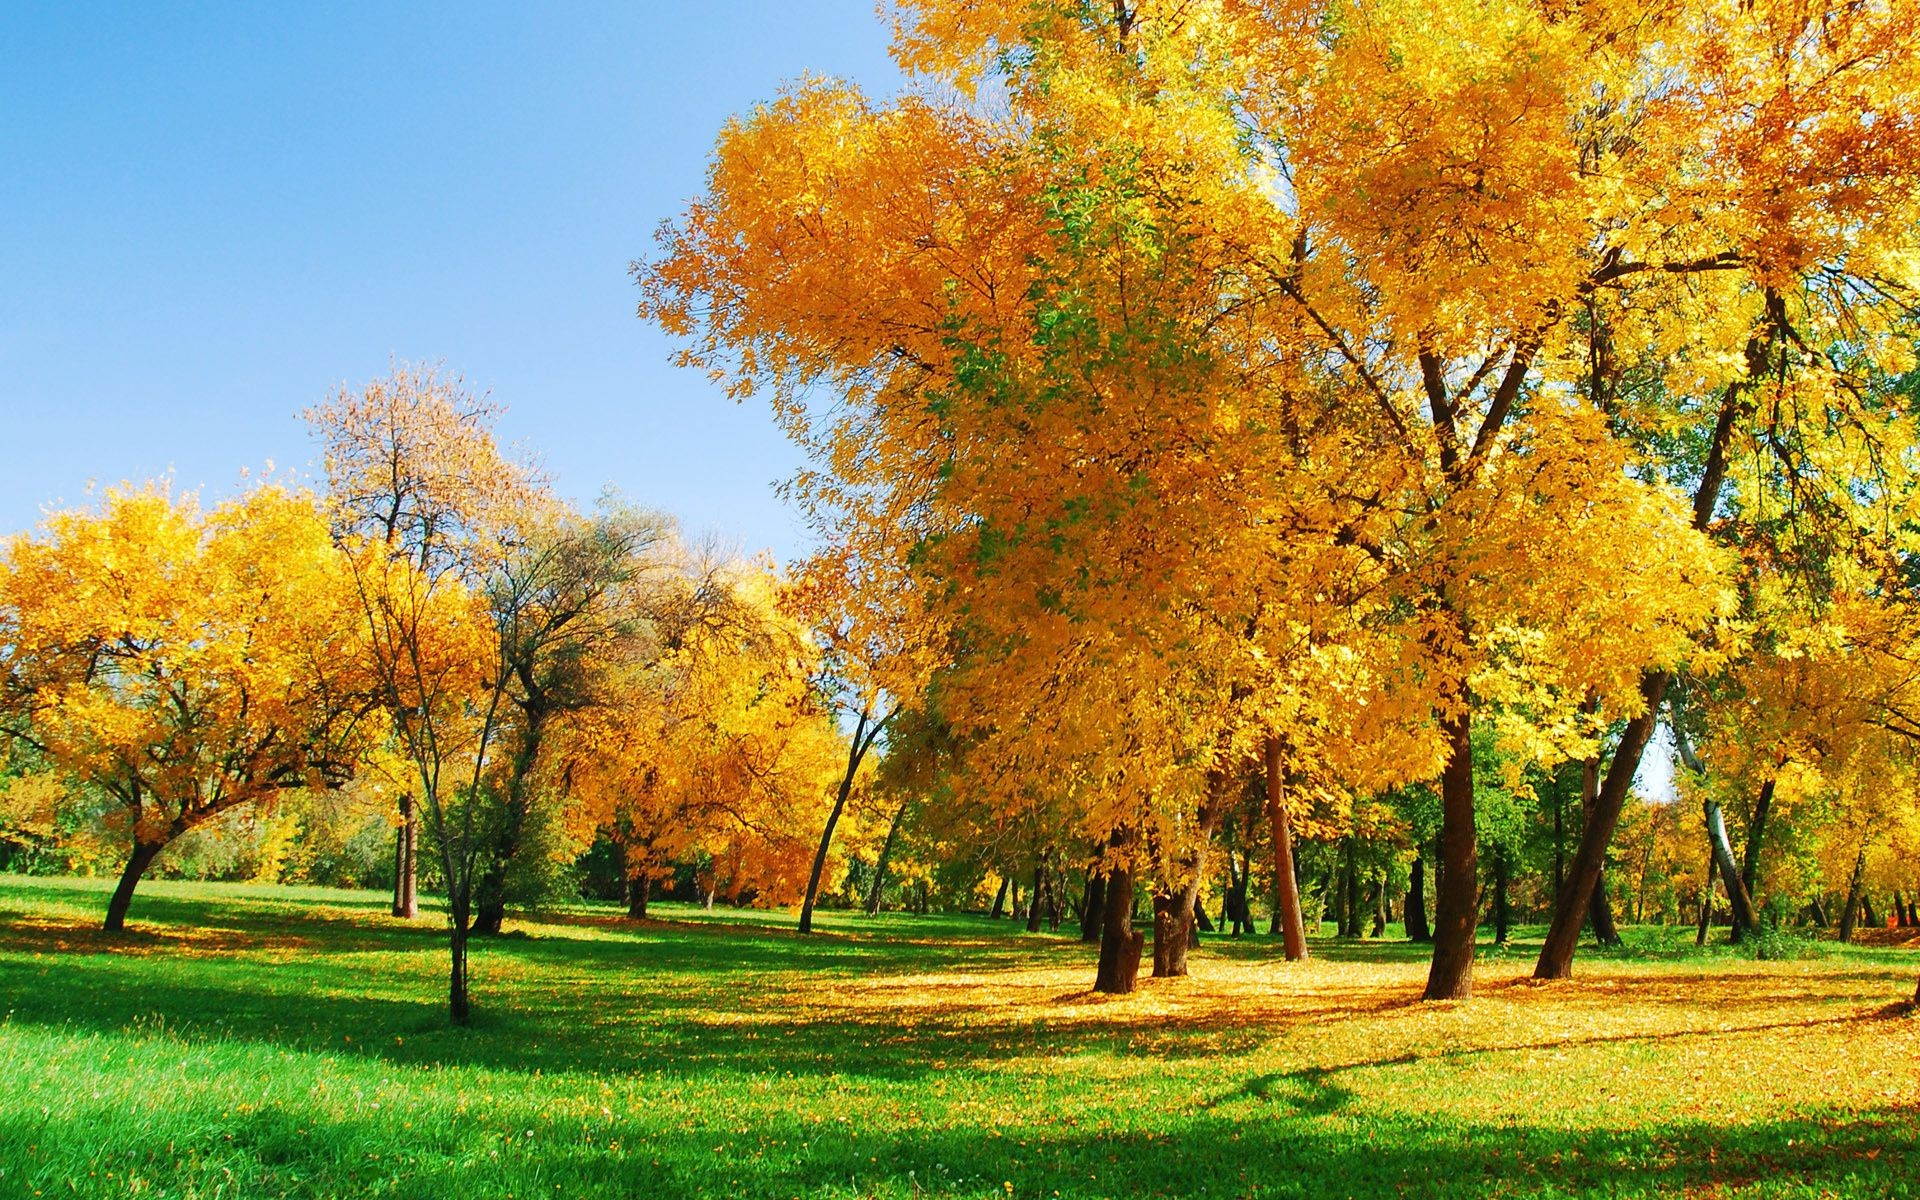 деревья осень дерево лист сезон парк пейзаж природа сельских филиал яркий кленовый хорошую погоду сельской местности золото древесины сцена трава пейзажи среды живописный